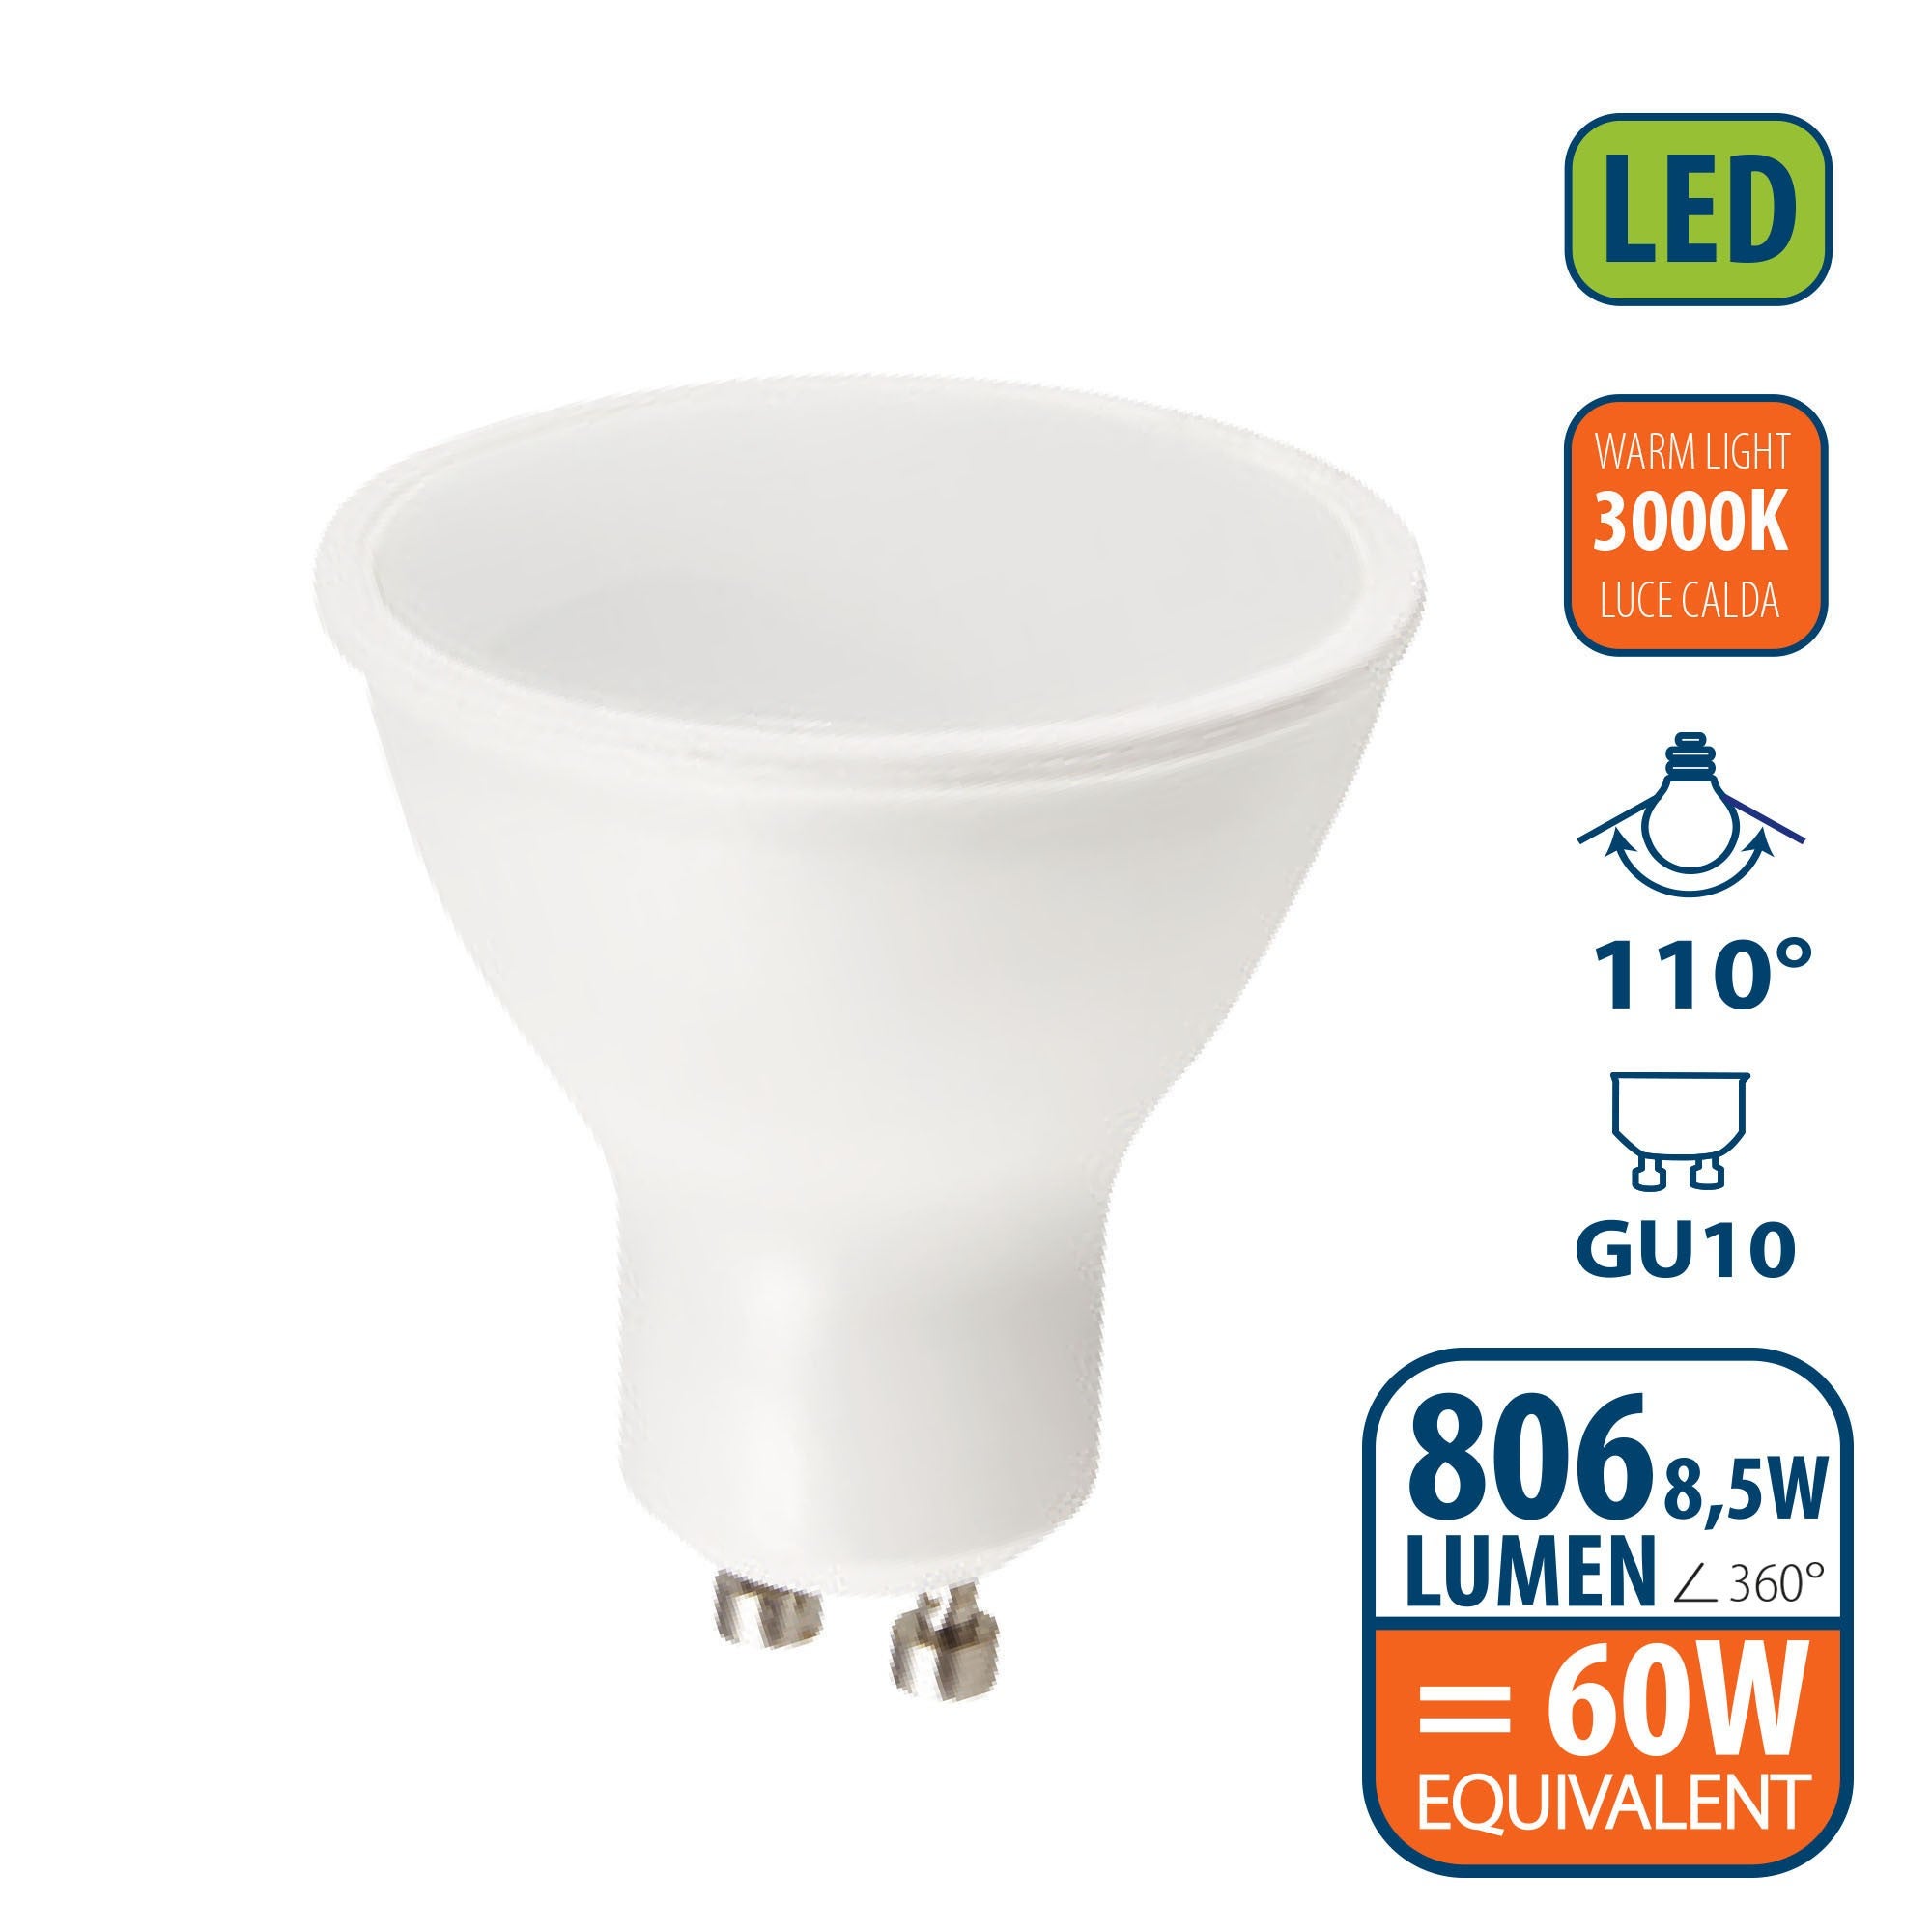 Ampoule LED SMD, spot GU10, 230V, 8,5W / 806lm, 3000K, 110